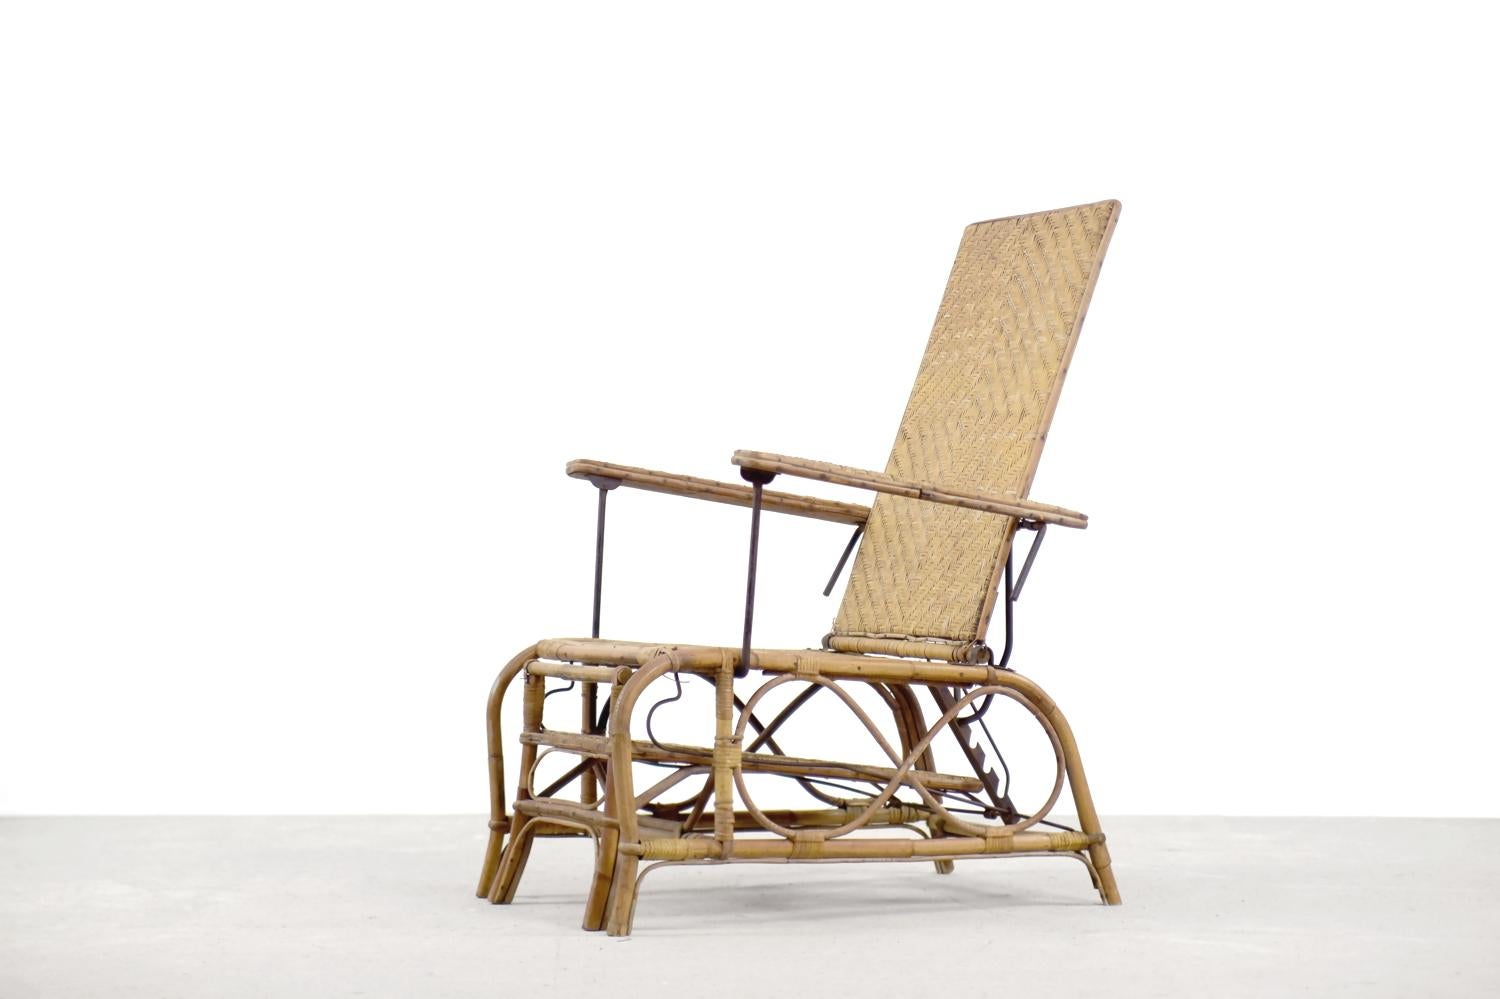 Dieser Sessel im Bauhaus-Stil wurde in den 1930er Jahren von Erich Dieckmann in Deutschland entworfen. Dieser Stuhl wird aus drei verschiedenen MATERIALEN hergestellt: Rattan, Bambus und Metall. Die Verwendung von hochwertigem Hartholz und